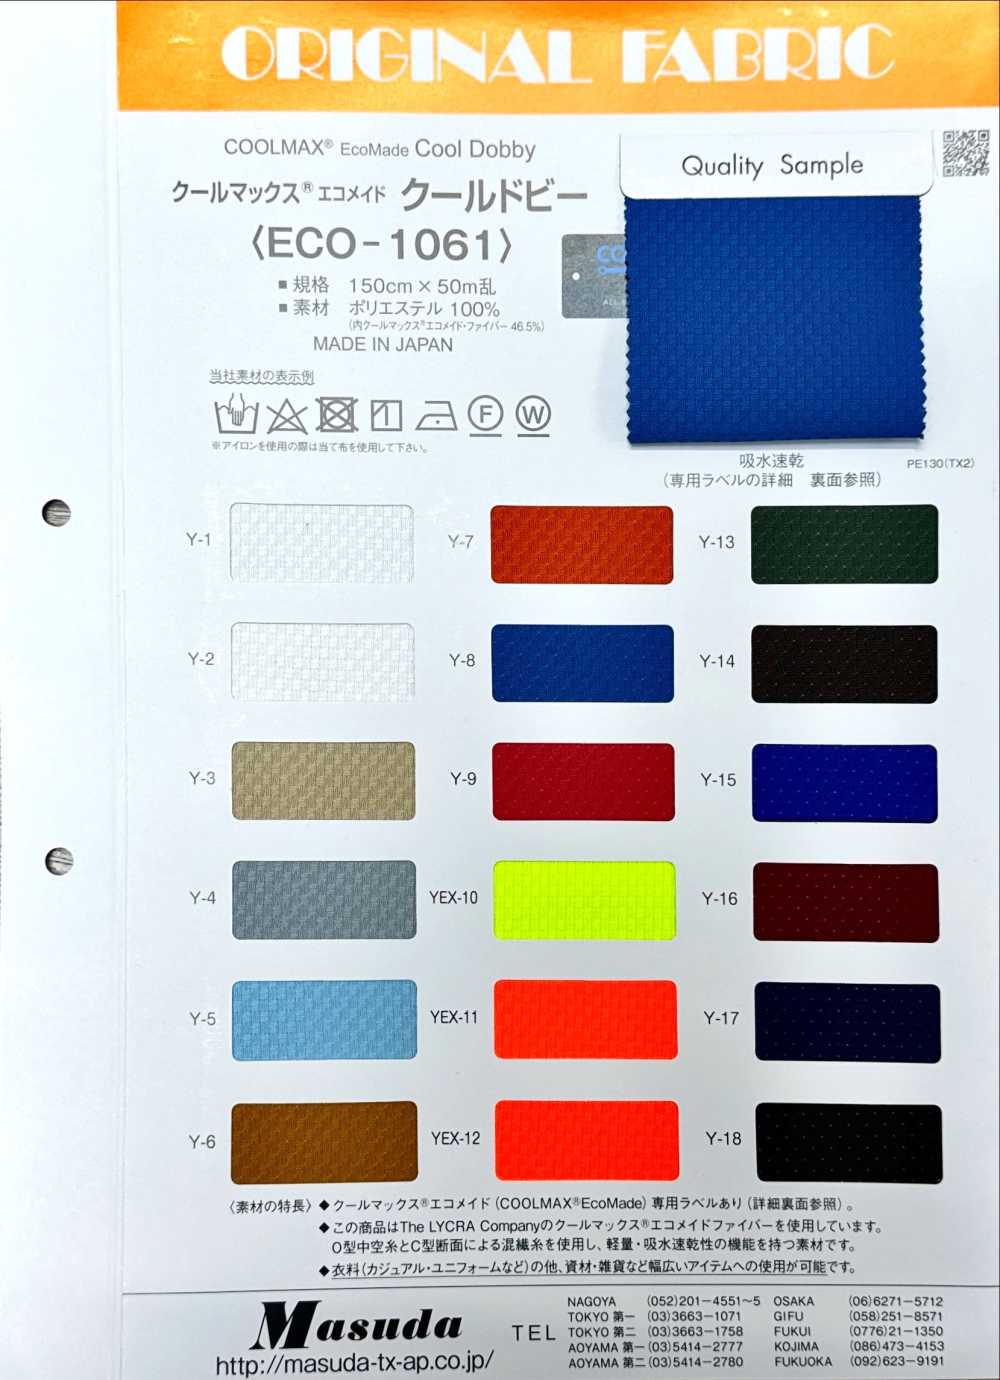 ECO-1061 Coolmax Ecomade Cool Dobby[Vải] Masuda (Masuda)